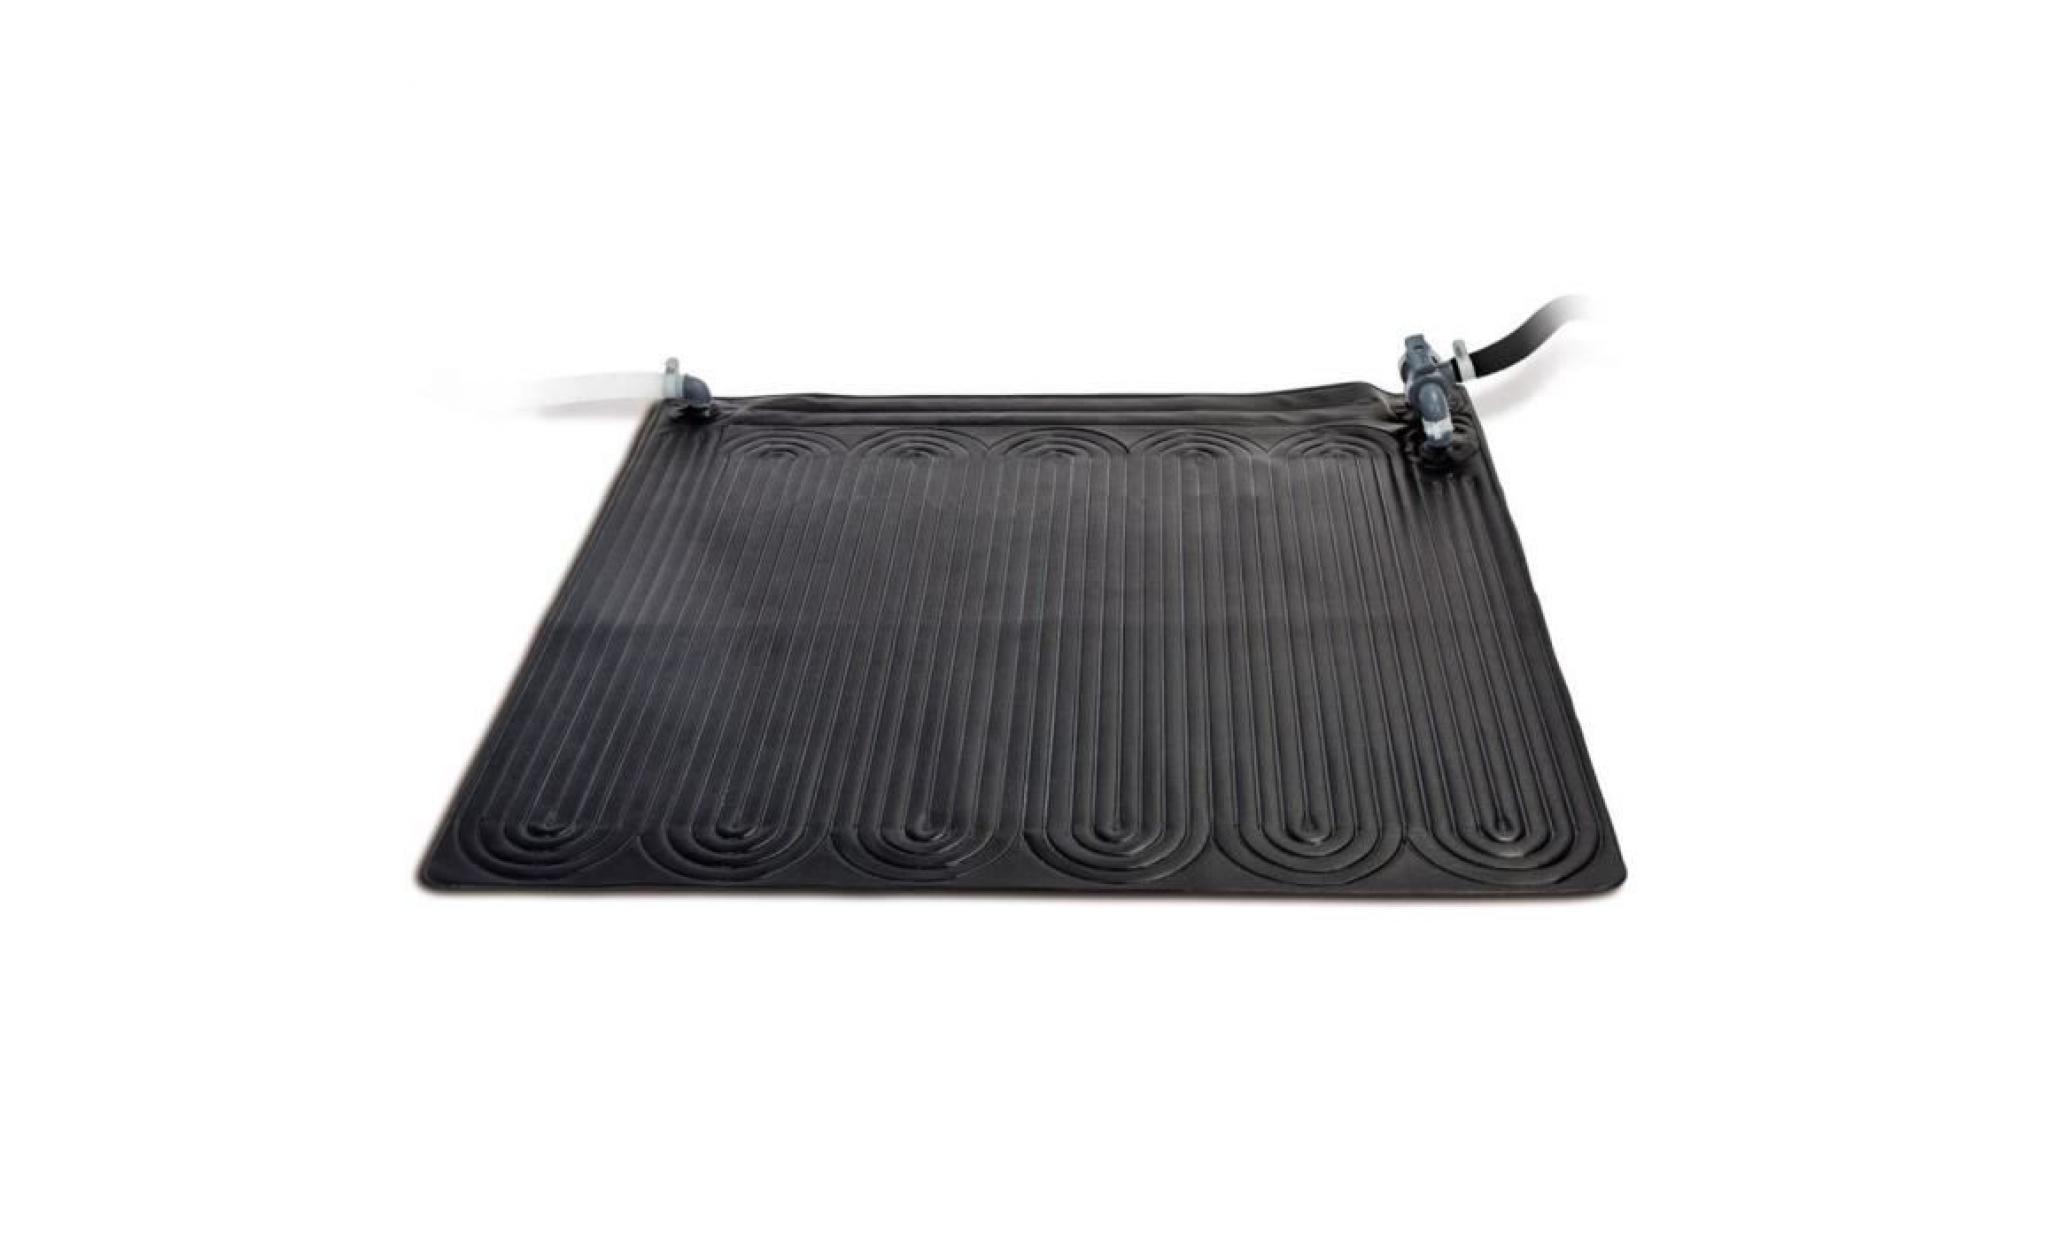 Intex Tapis solaire chauffant PVC 1,2x1,2 m Noir 28685